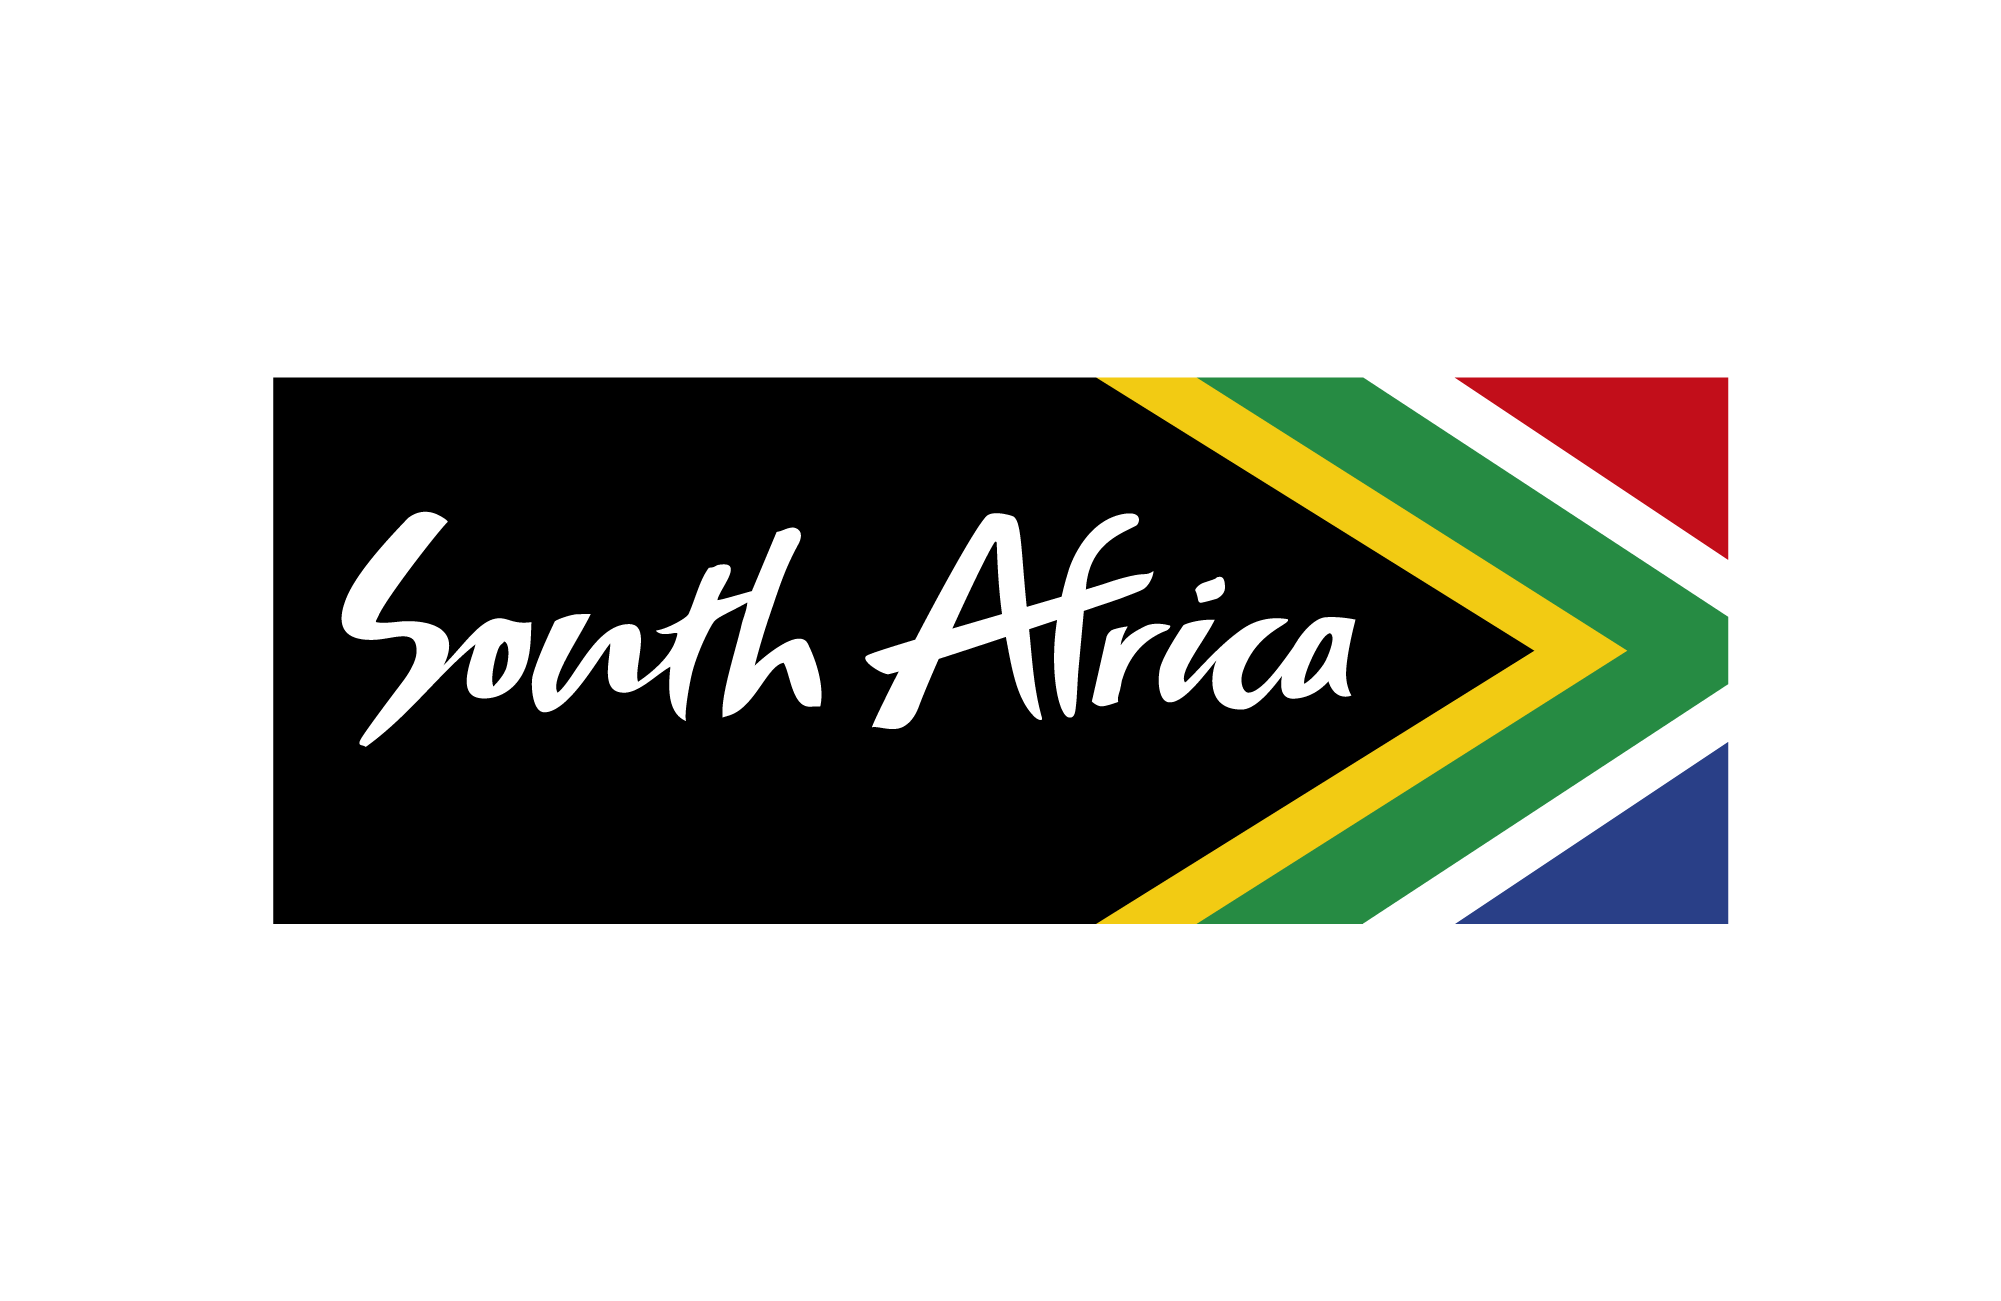 Logotypen för South Africa.